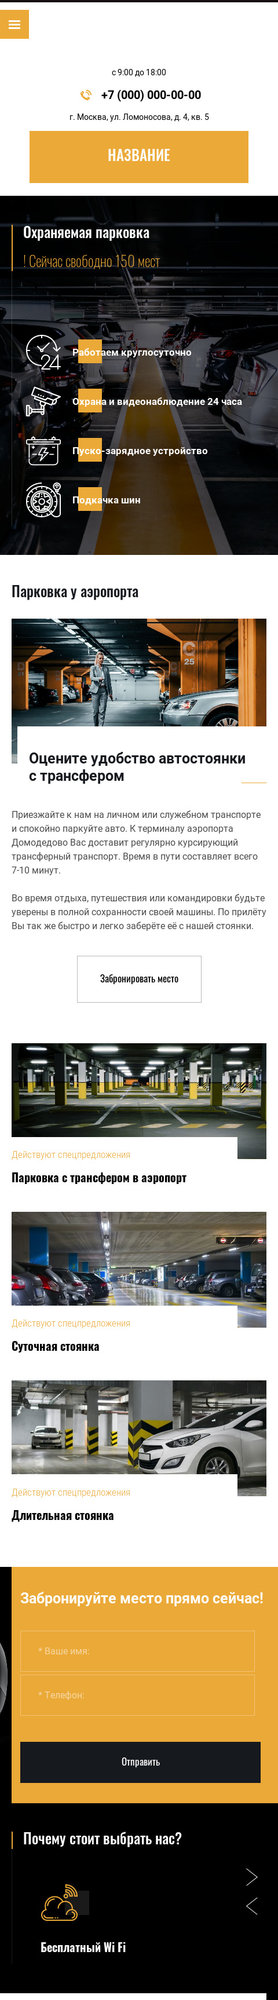 Готовый Сайт-Бизнес № 2503233 - Автостоянки, гаражи (Мобильная версия)